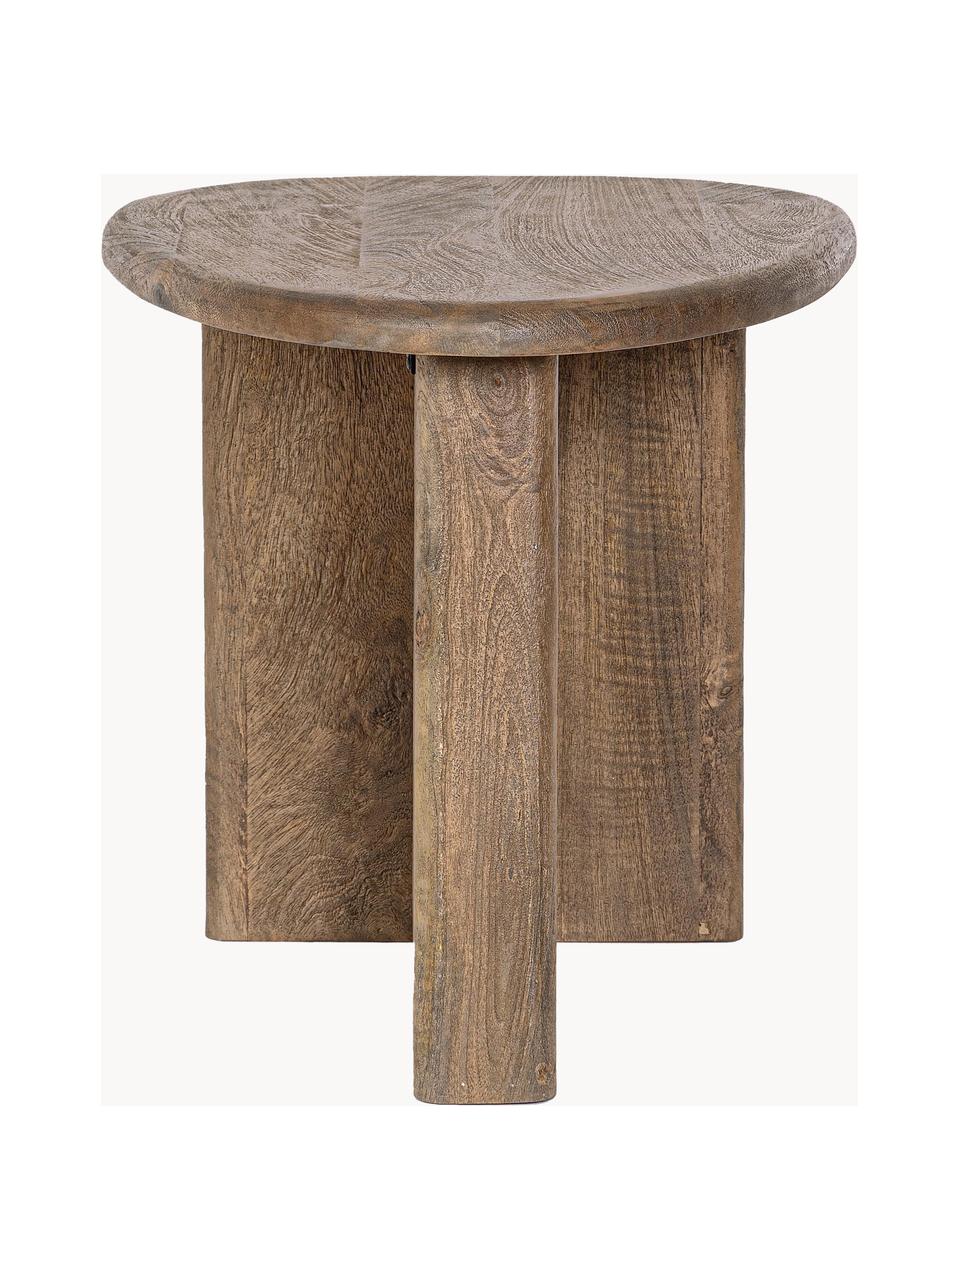 Oválny konferenčný stolík z mangového dreva Zacetas, Mangové drevo, Mangové drevo, Š 60 x H 45 cm